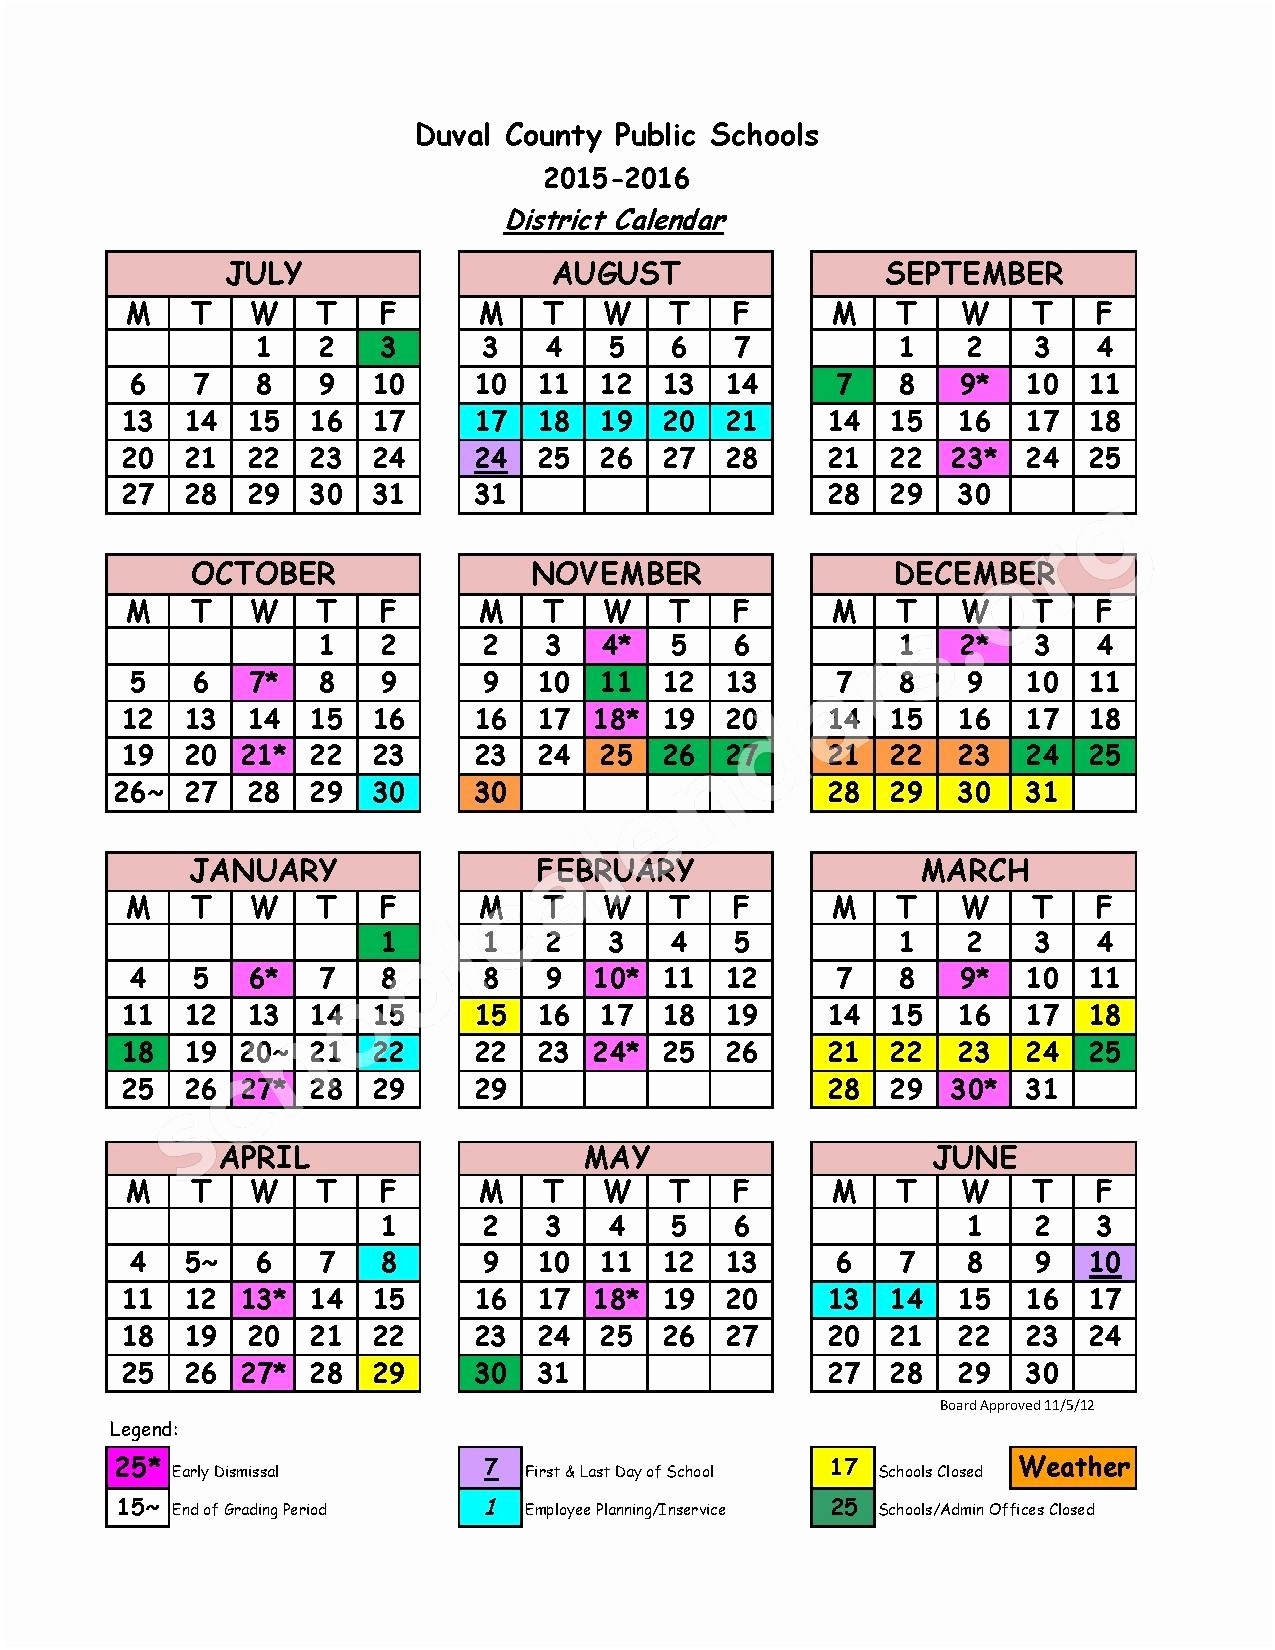 duval-school-calendar-qualads